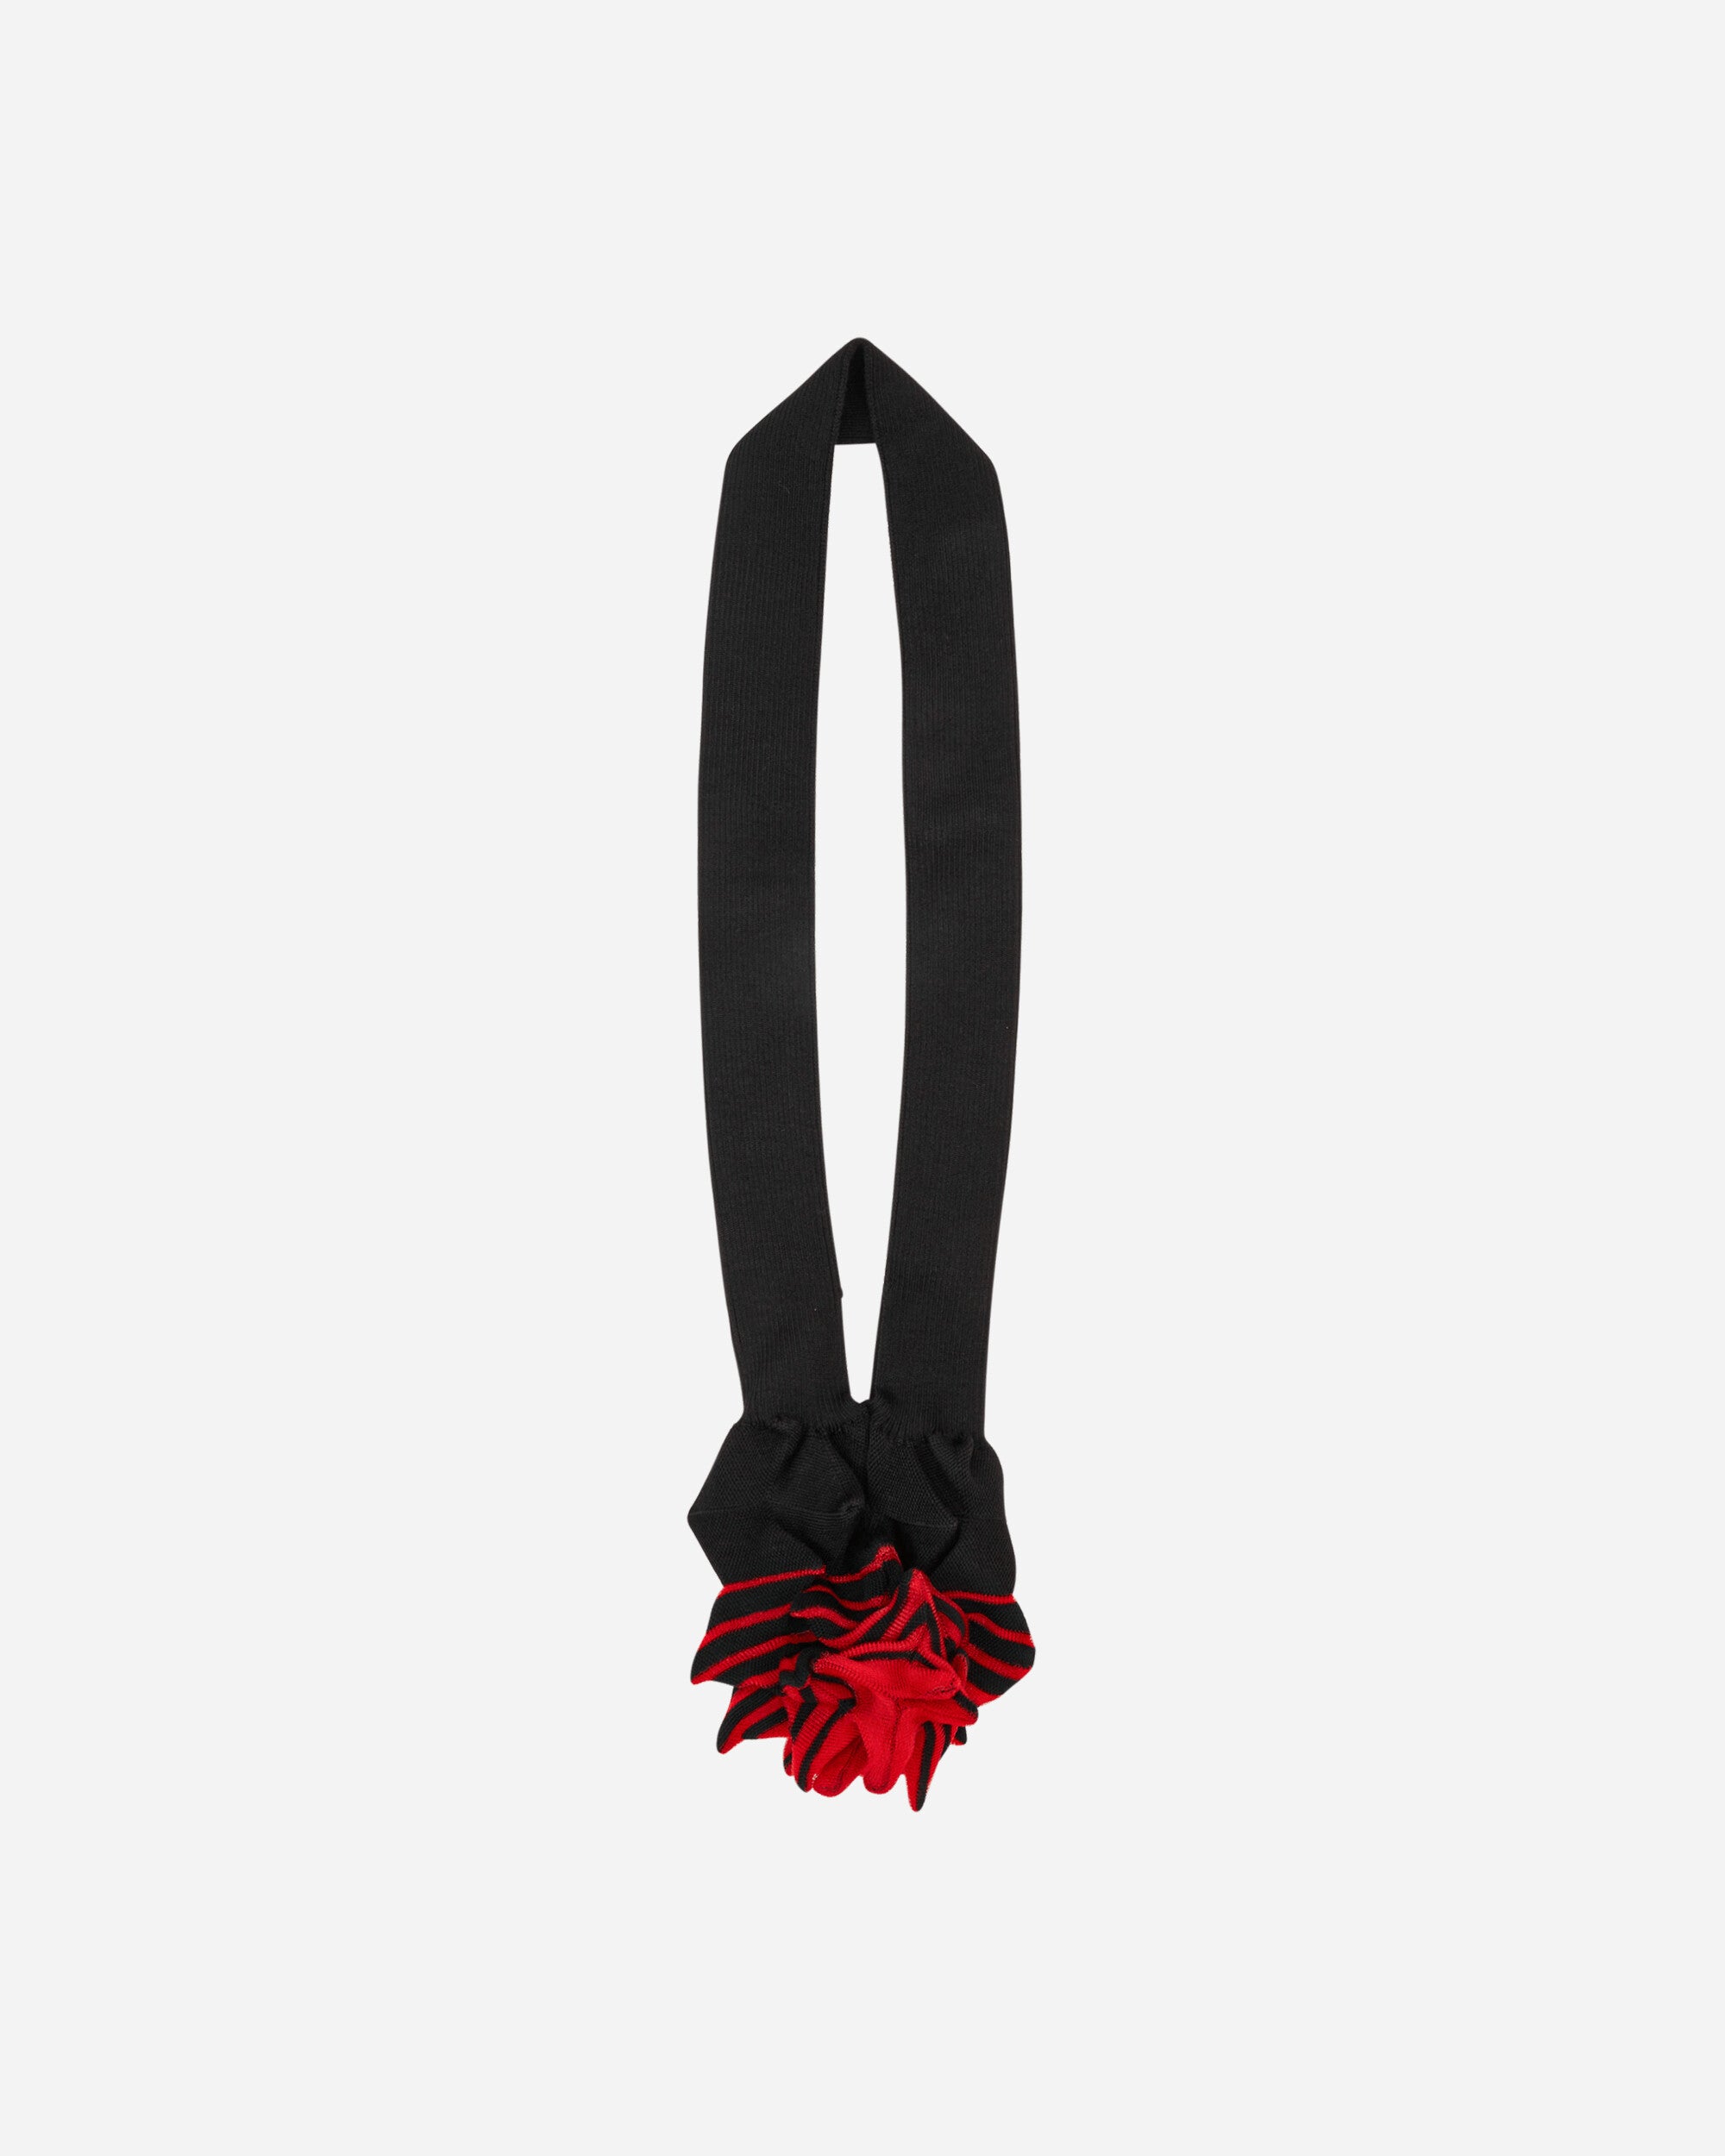 Medium Spiky Bag Black / Red